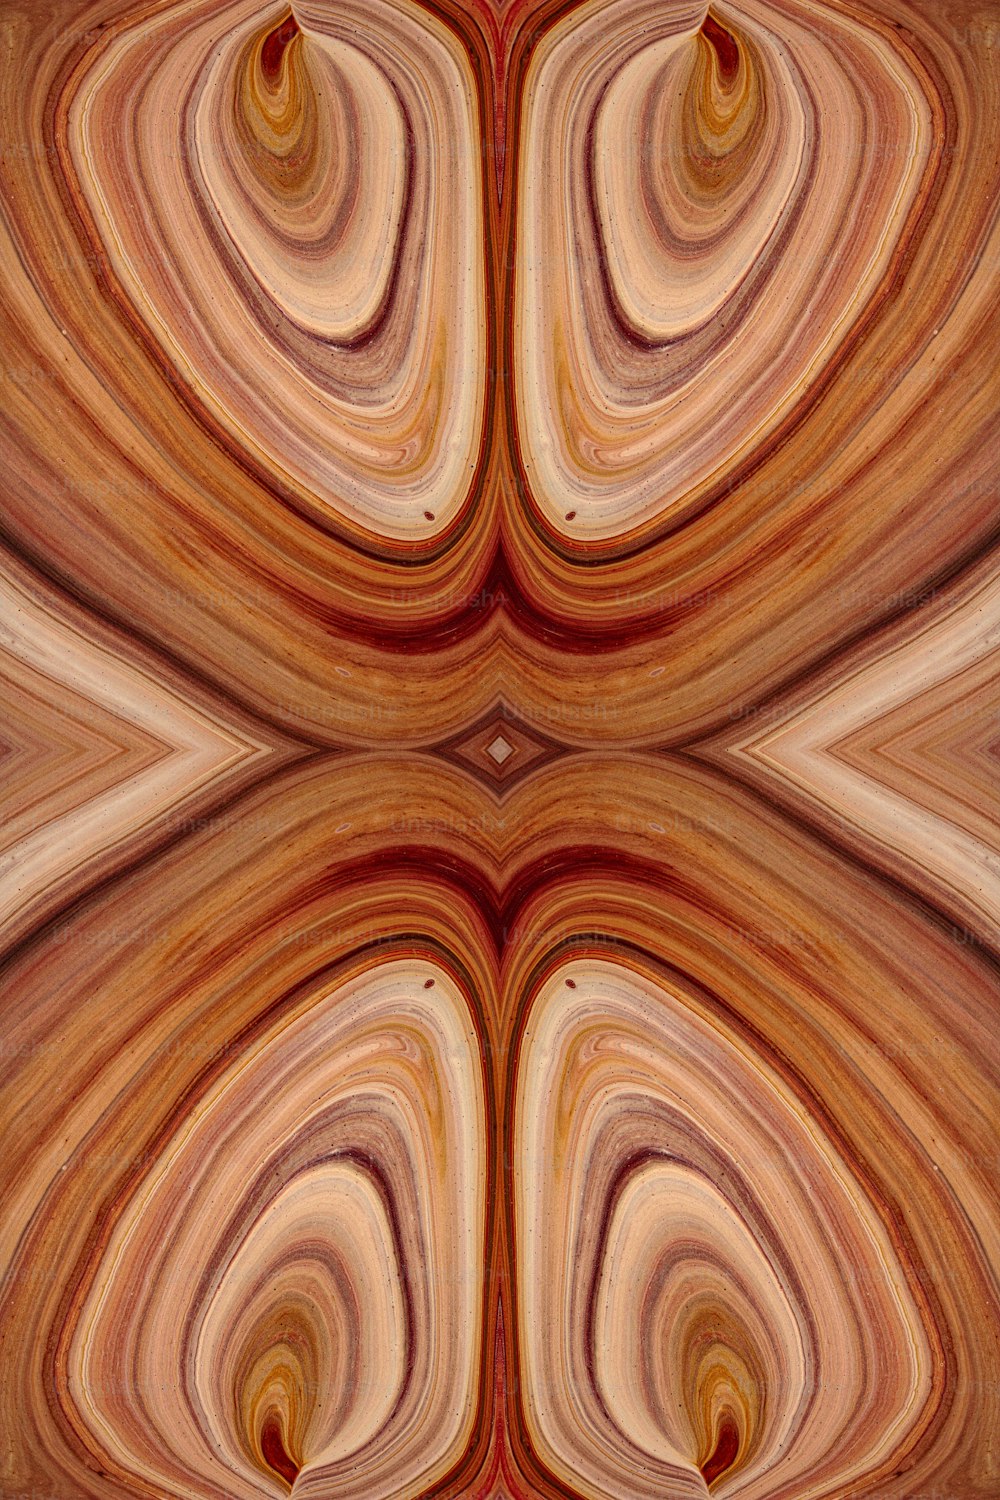 Una imagen abstracta de un remolino marrón y rojo